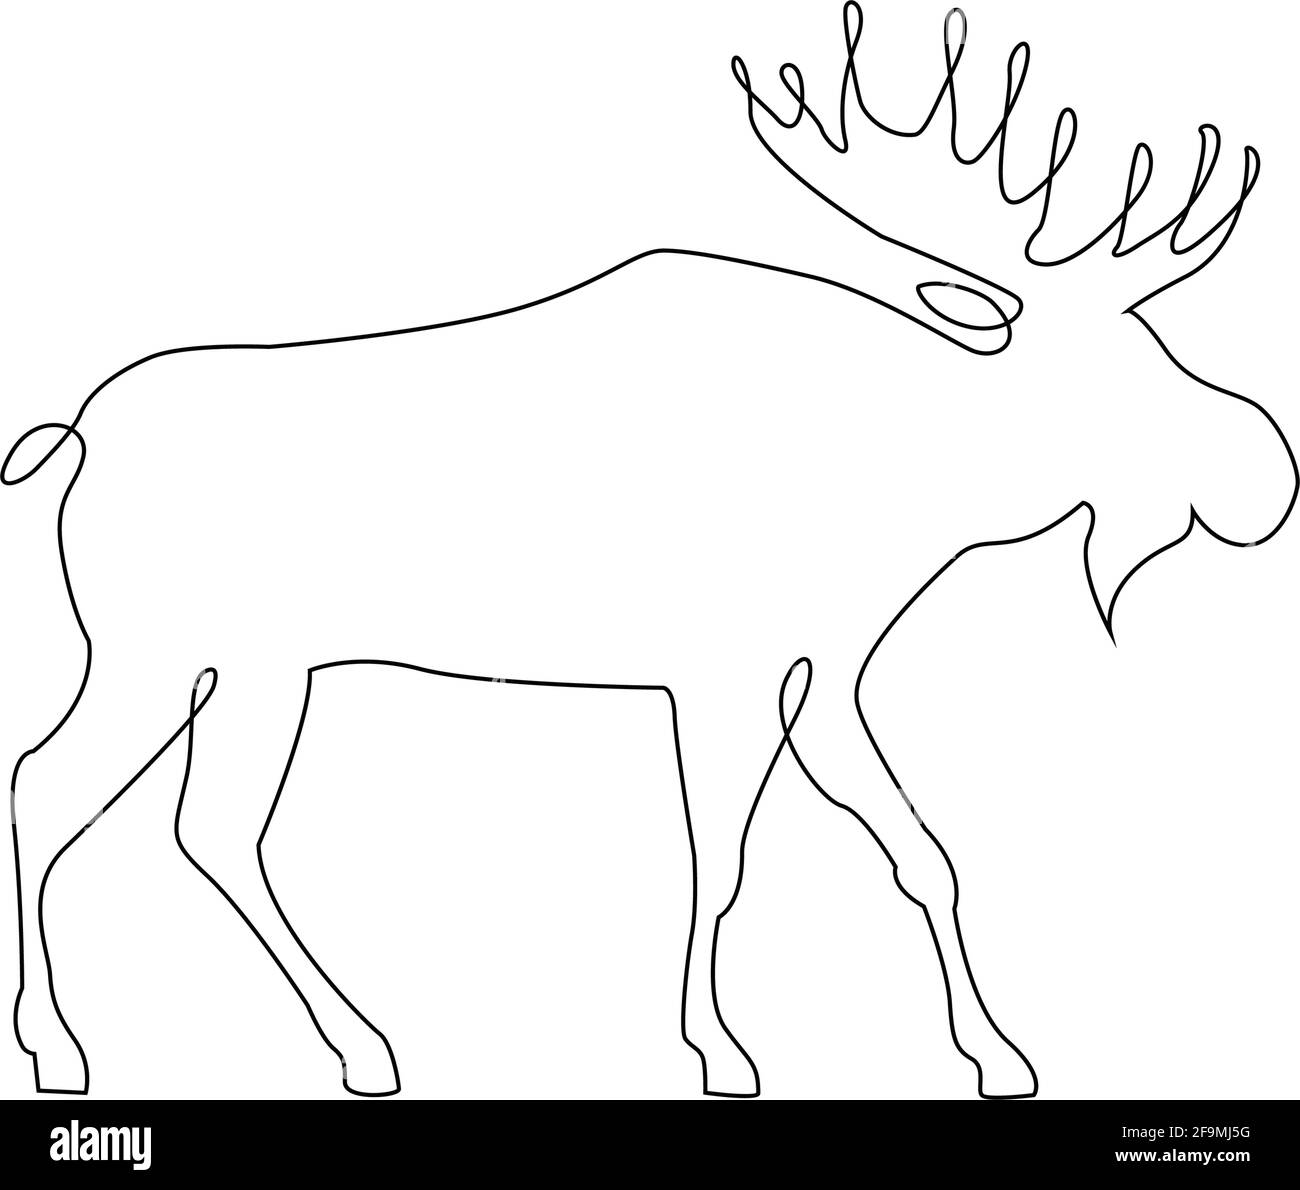 Icona minimalista di un'unica linea di Moose Deer. Moose o Caribou renna una linea di disegno a mano di arte continua Illustrazione vettoriale. Disegno libero a linea singola di Illustrazione Vettoriale